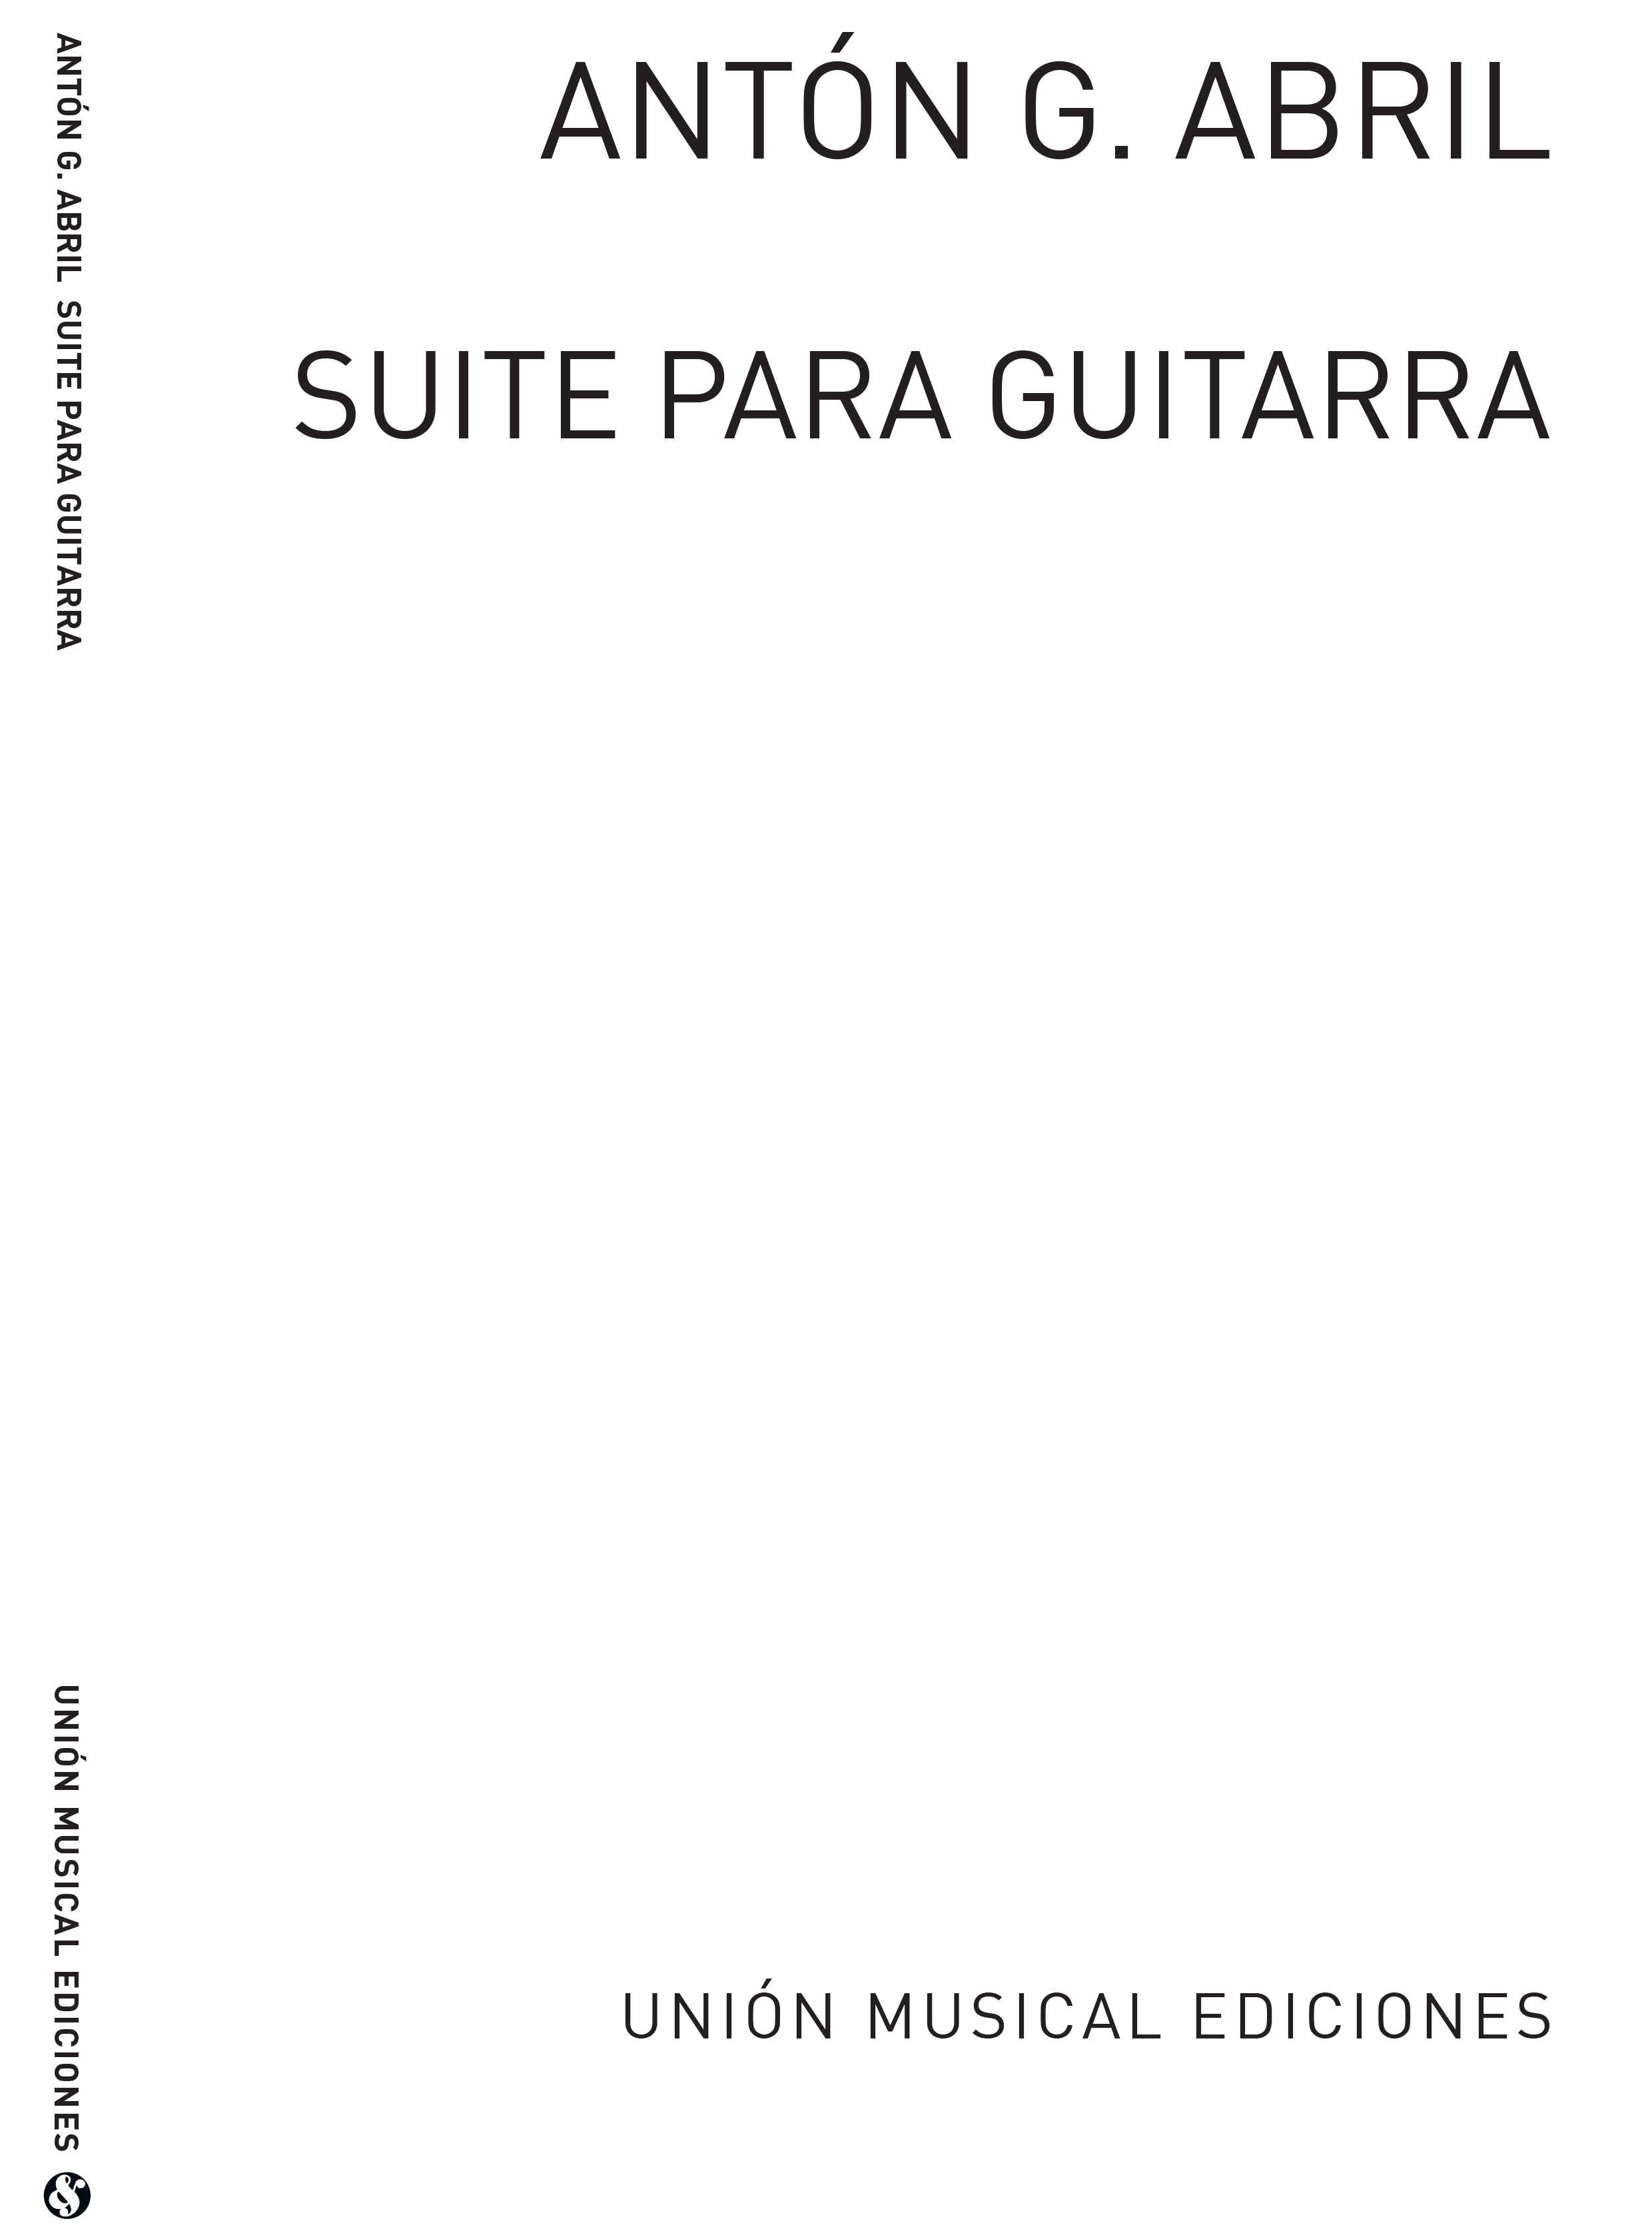 Anton Garcia Abril: Suite Para Guitarra: Guitar: Instrumental Album